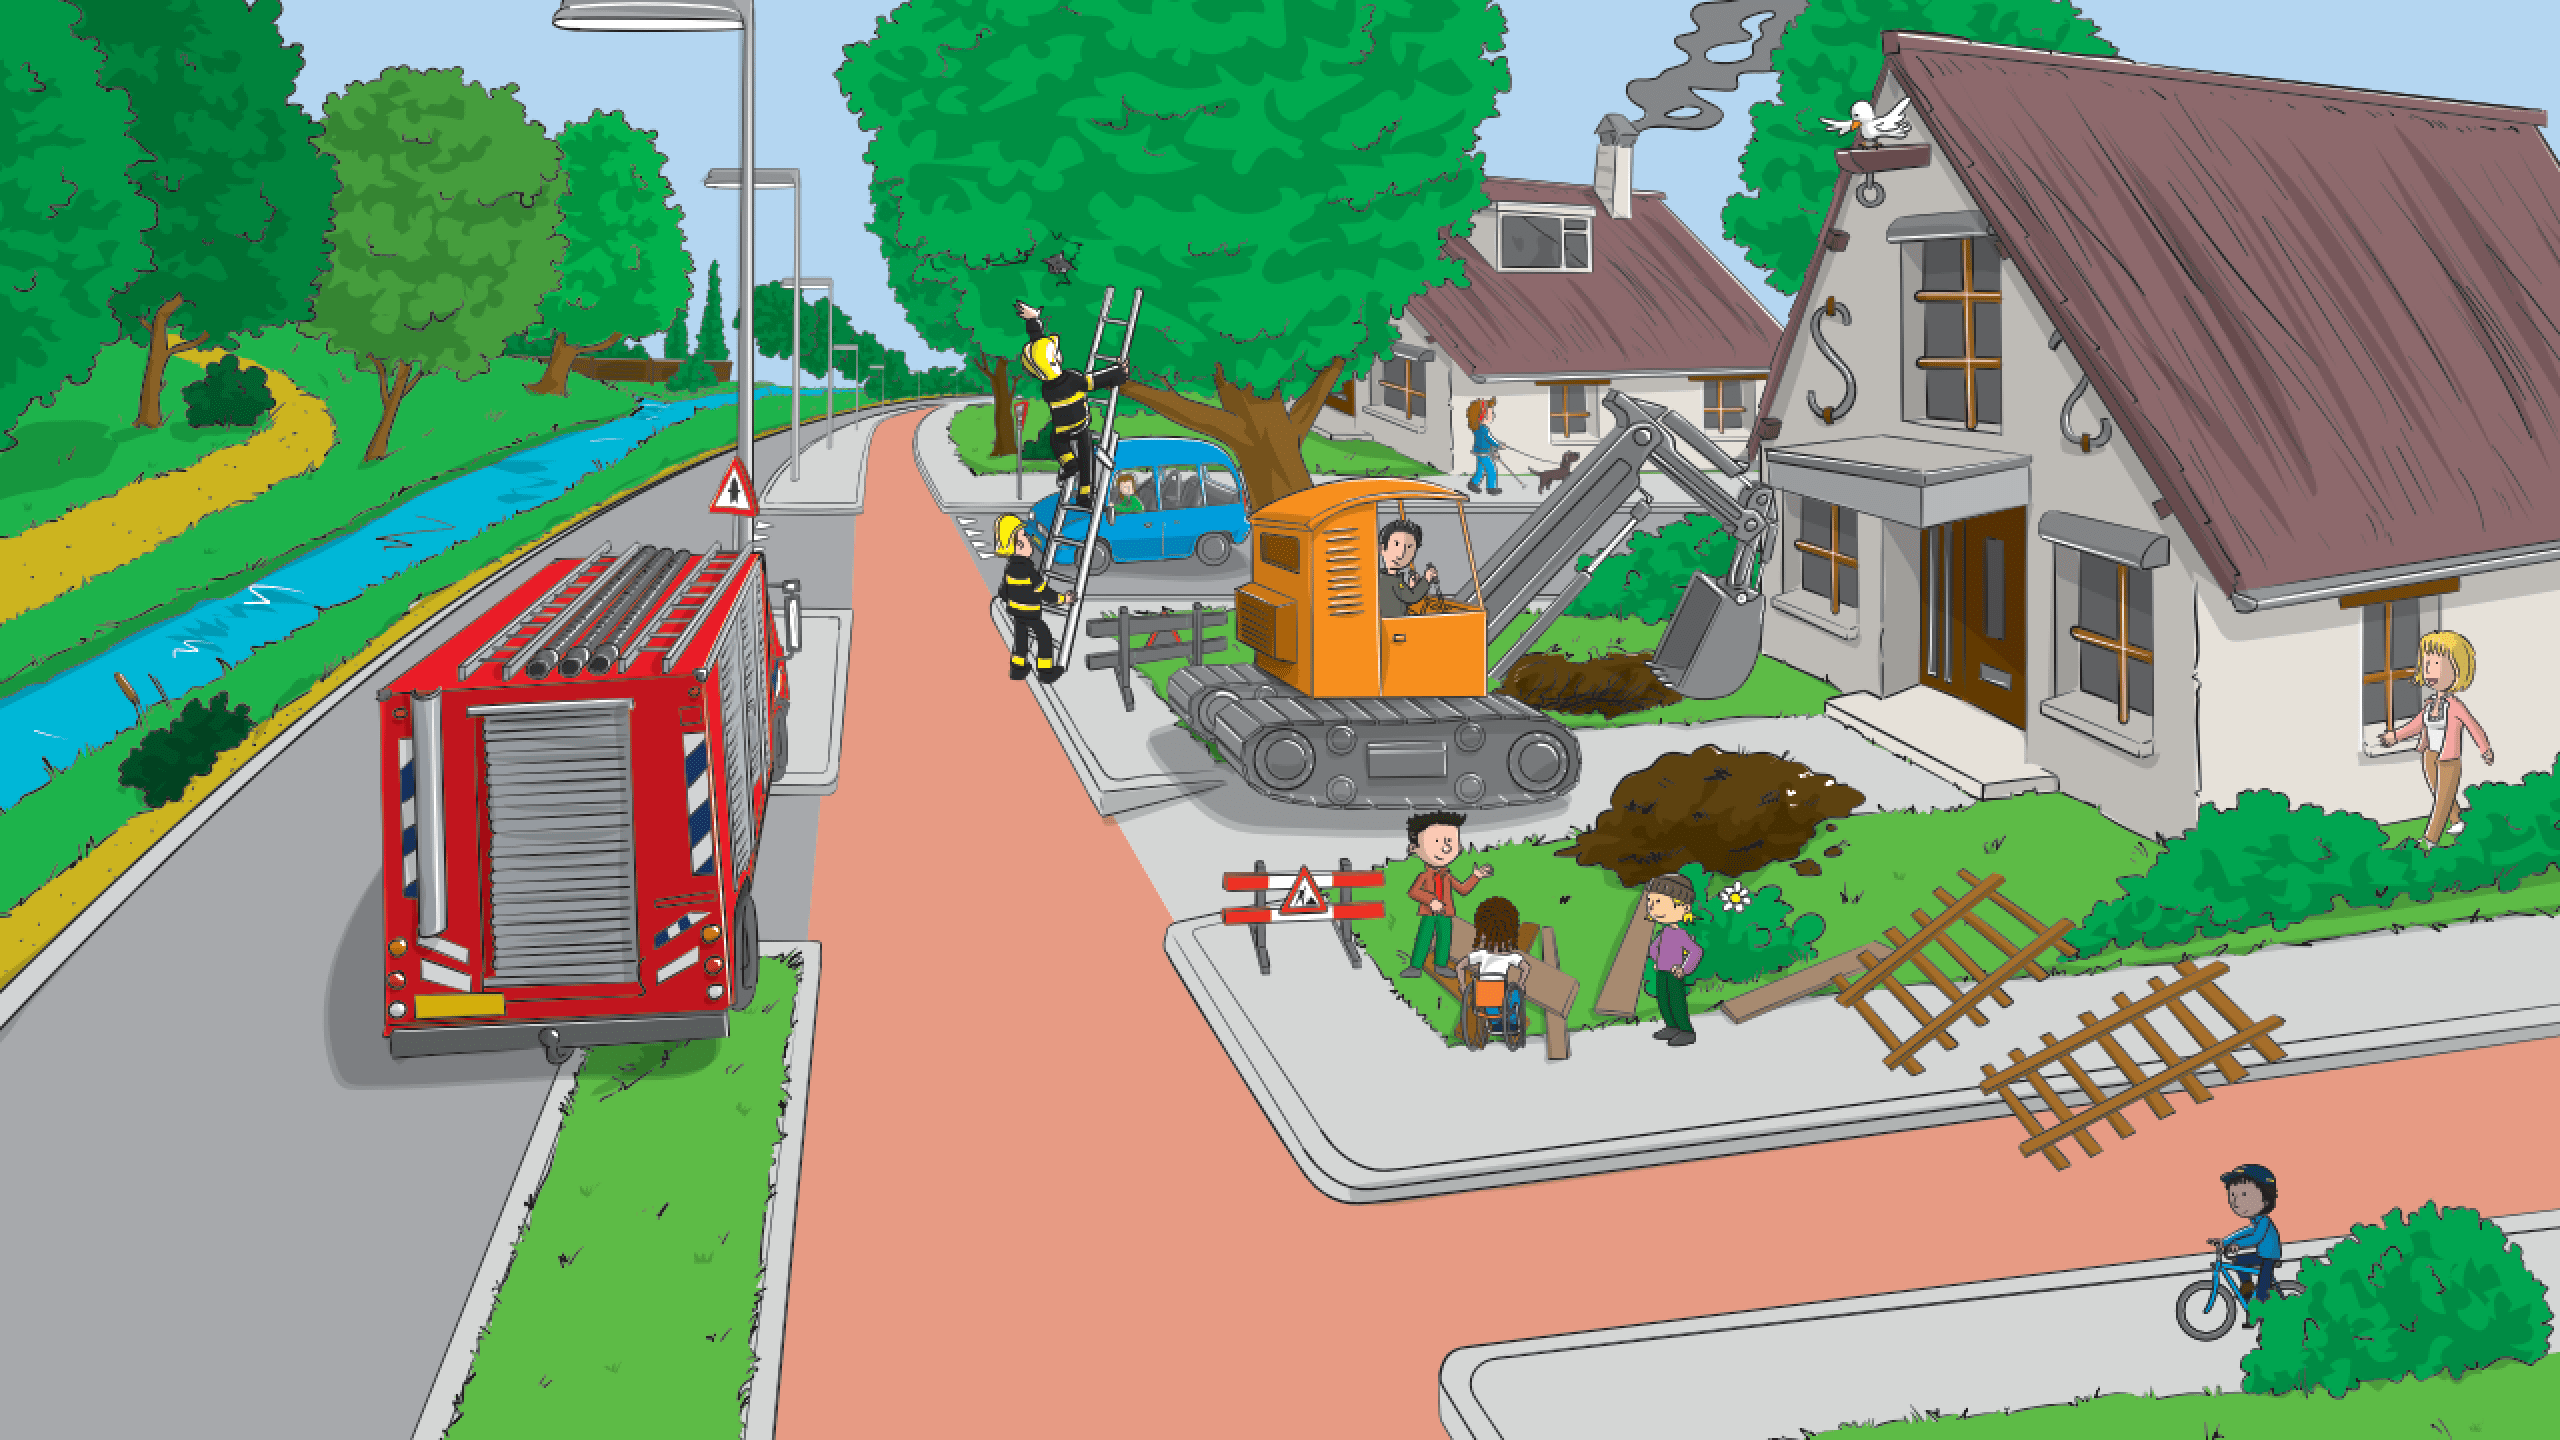 Brandweerwagen op de weg, shovel bij het woonhuis en kinderen die rondlopen